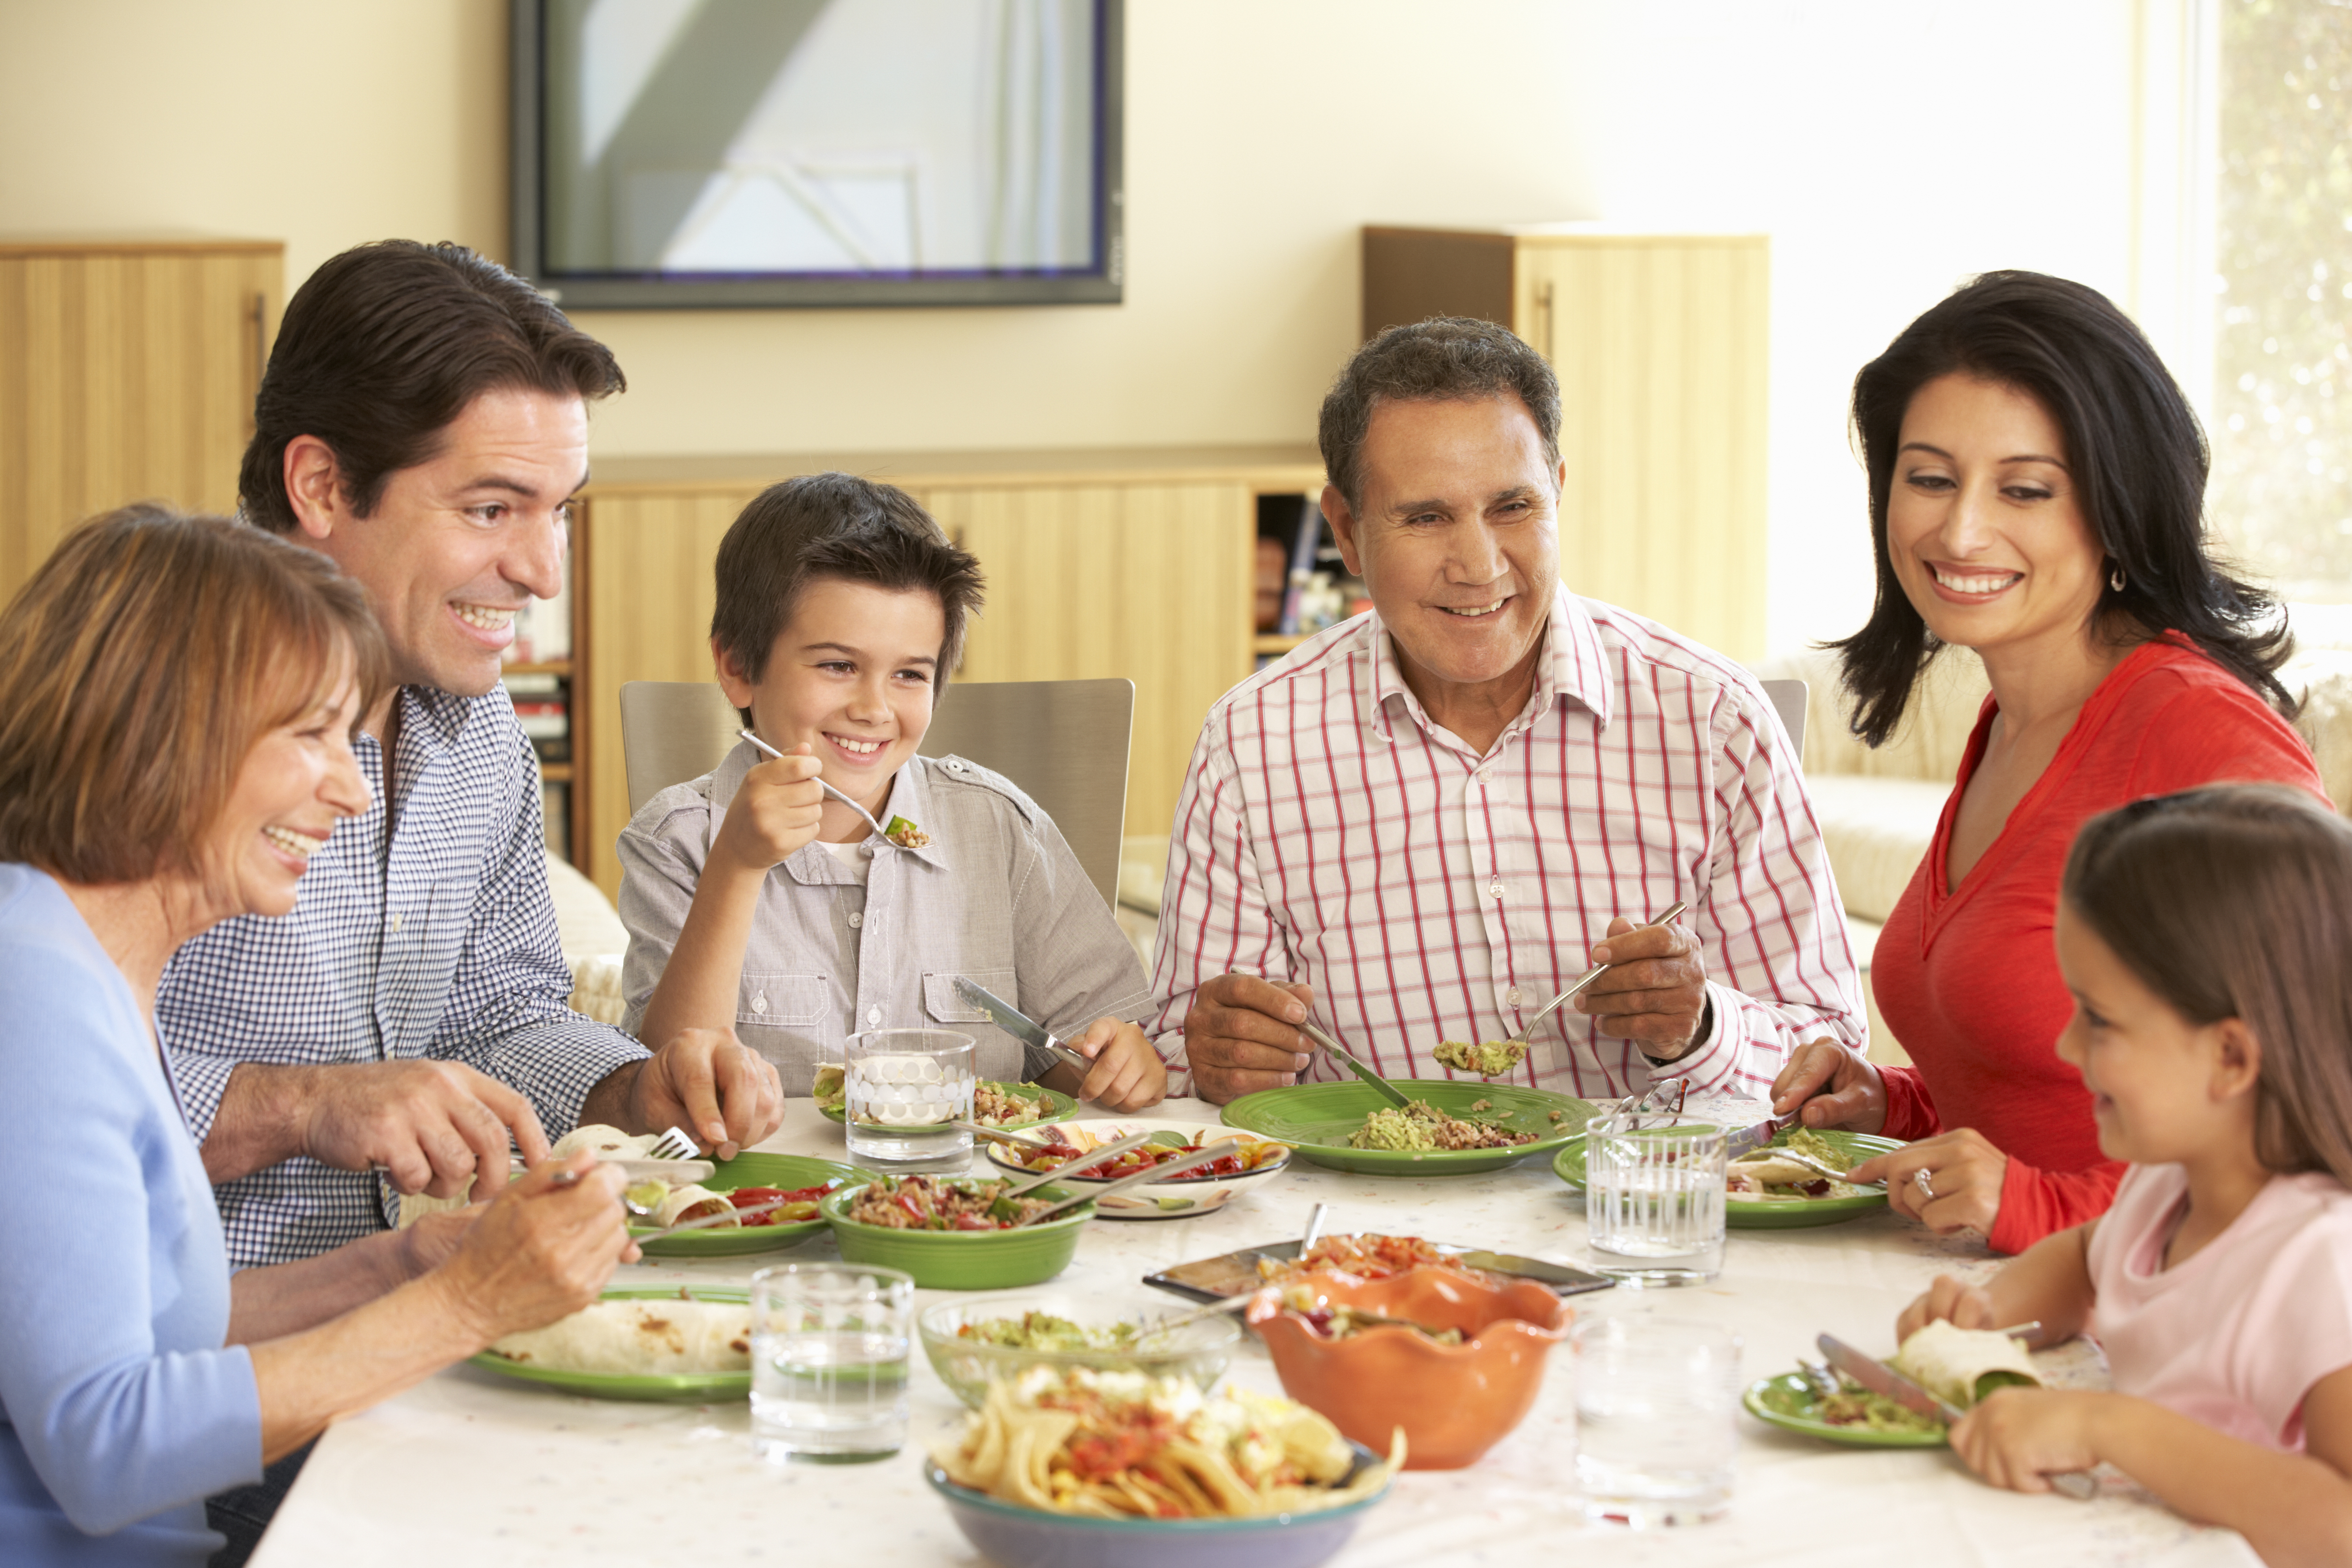 Как говорится в семье. Испанская семья за столом. Семья наслаждаются едой. Расширенная семья. Питание семьи.